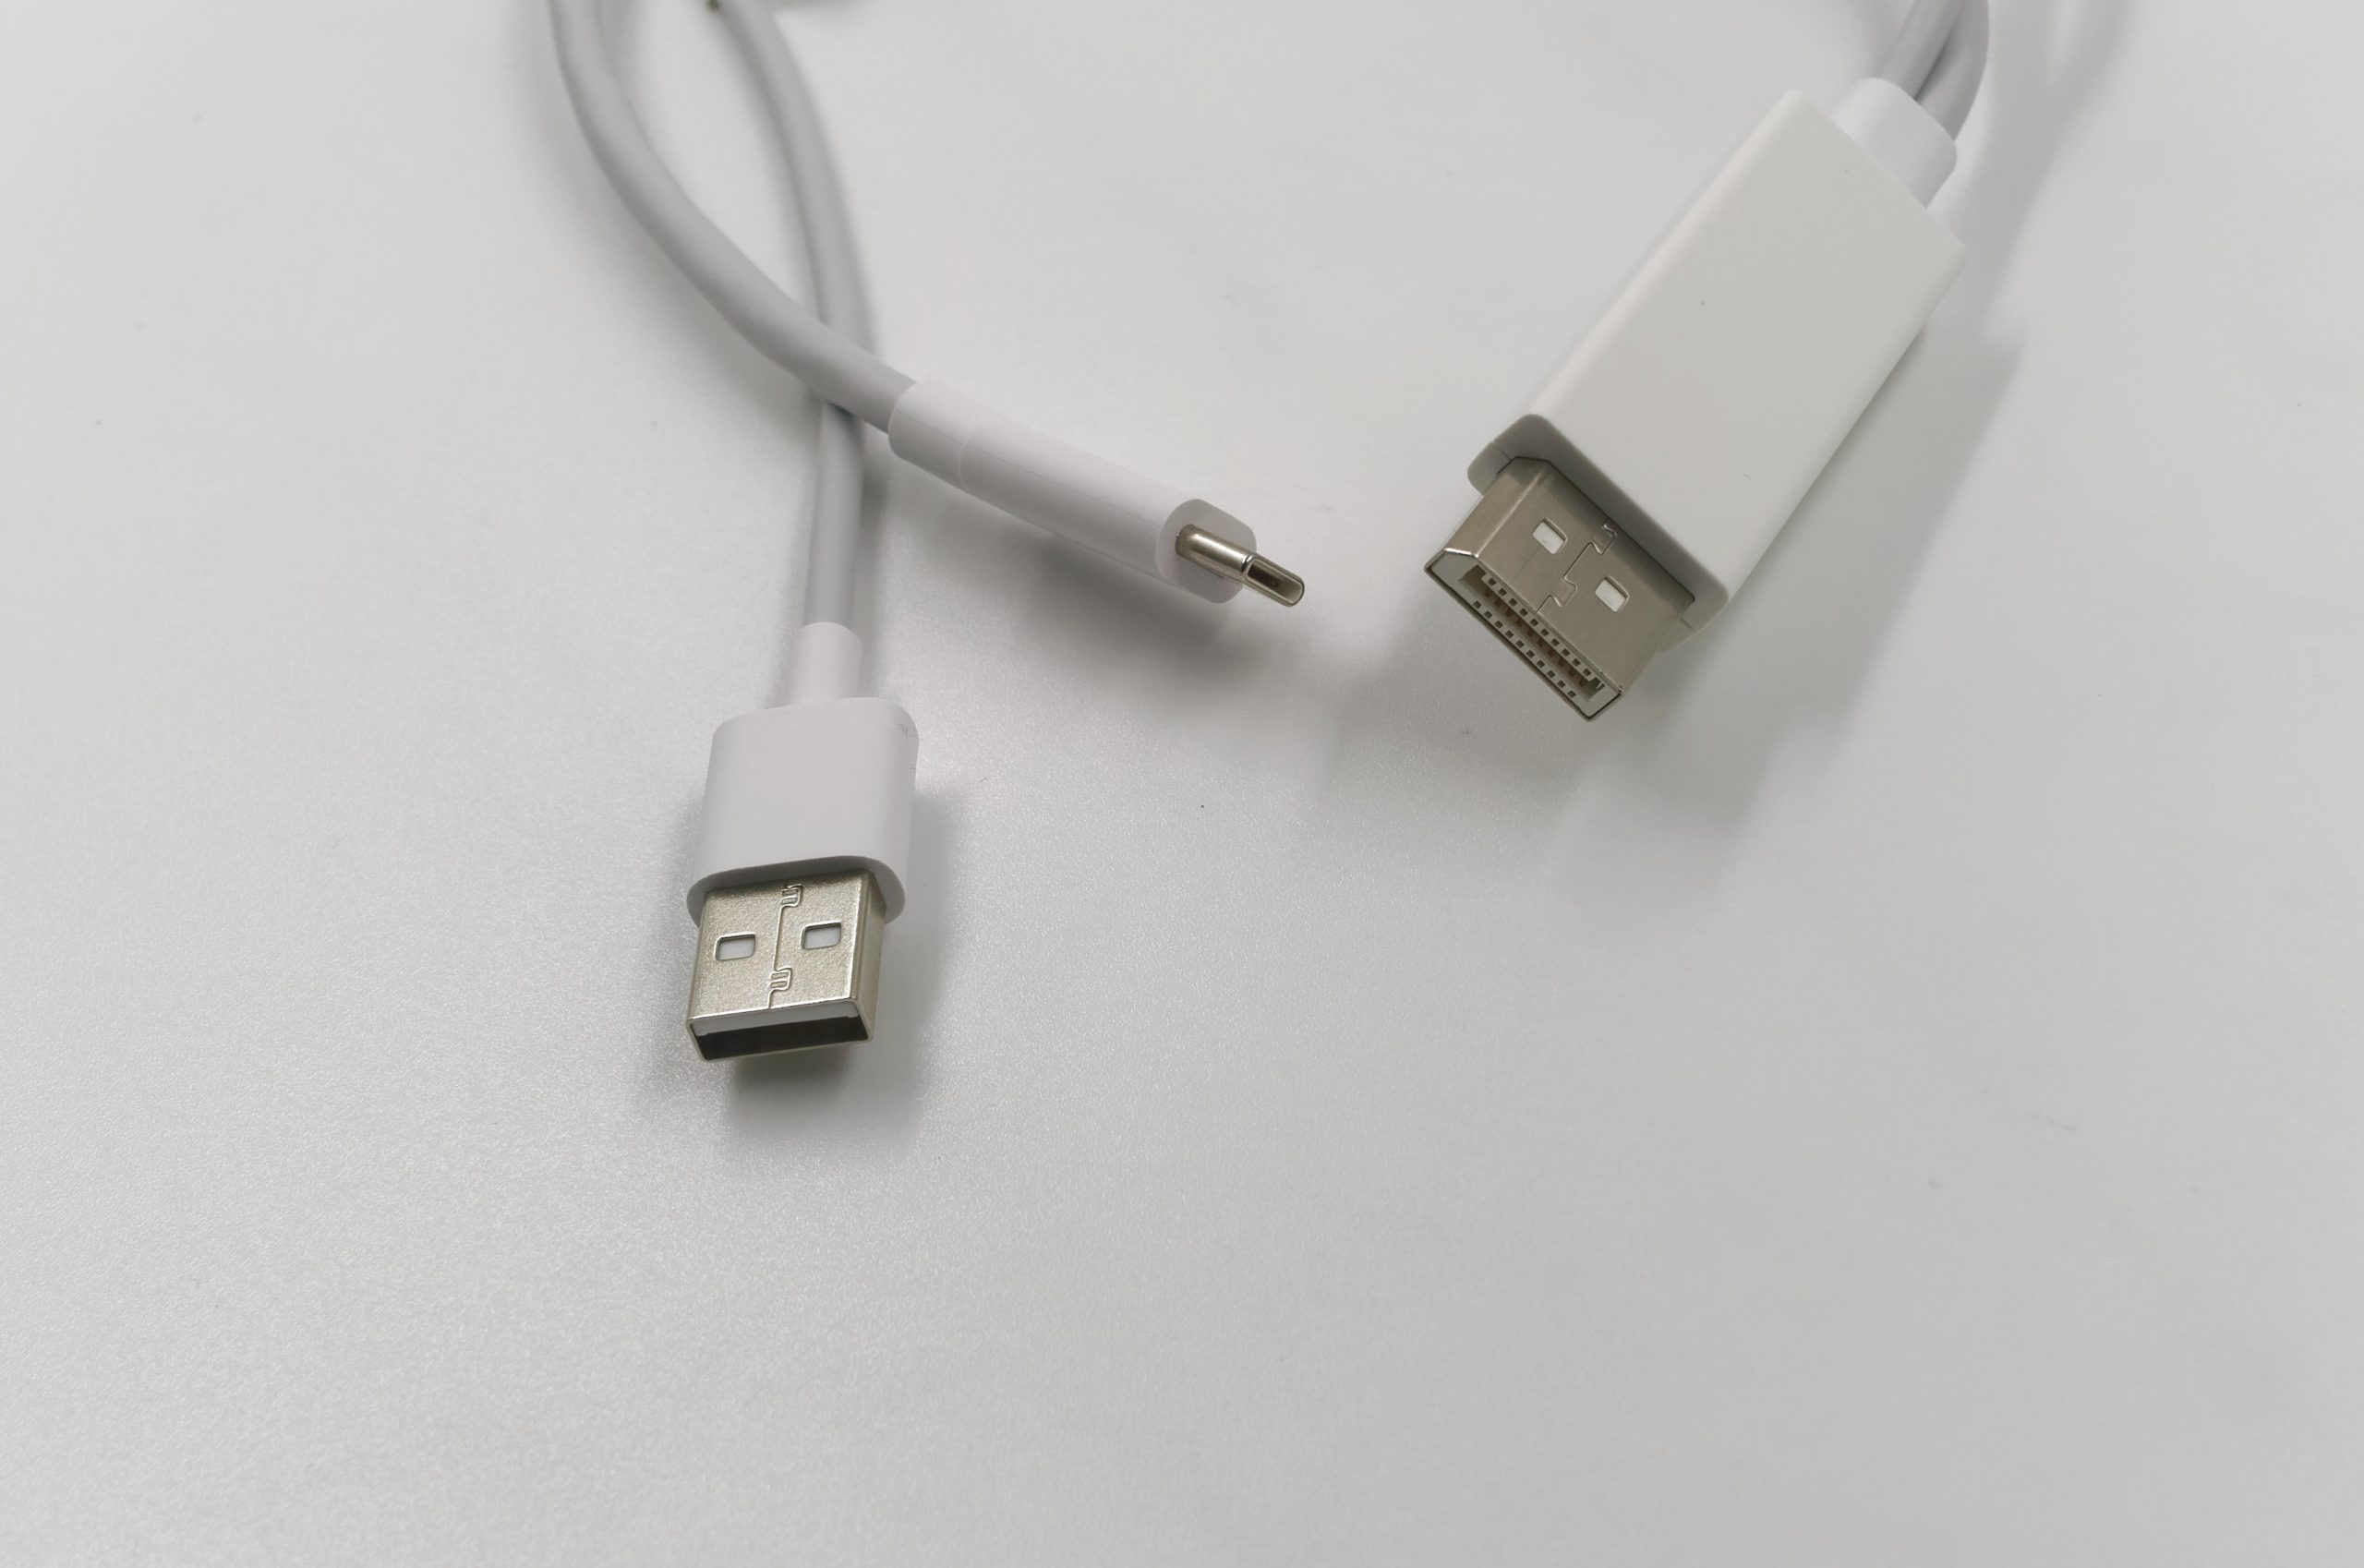 Comment choisir un écran USB-C ?